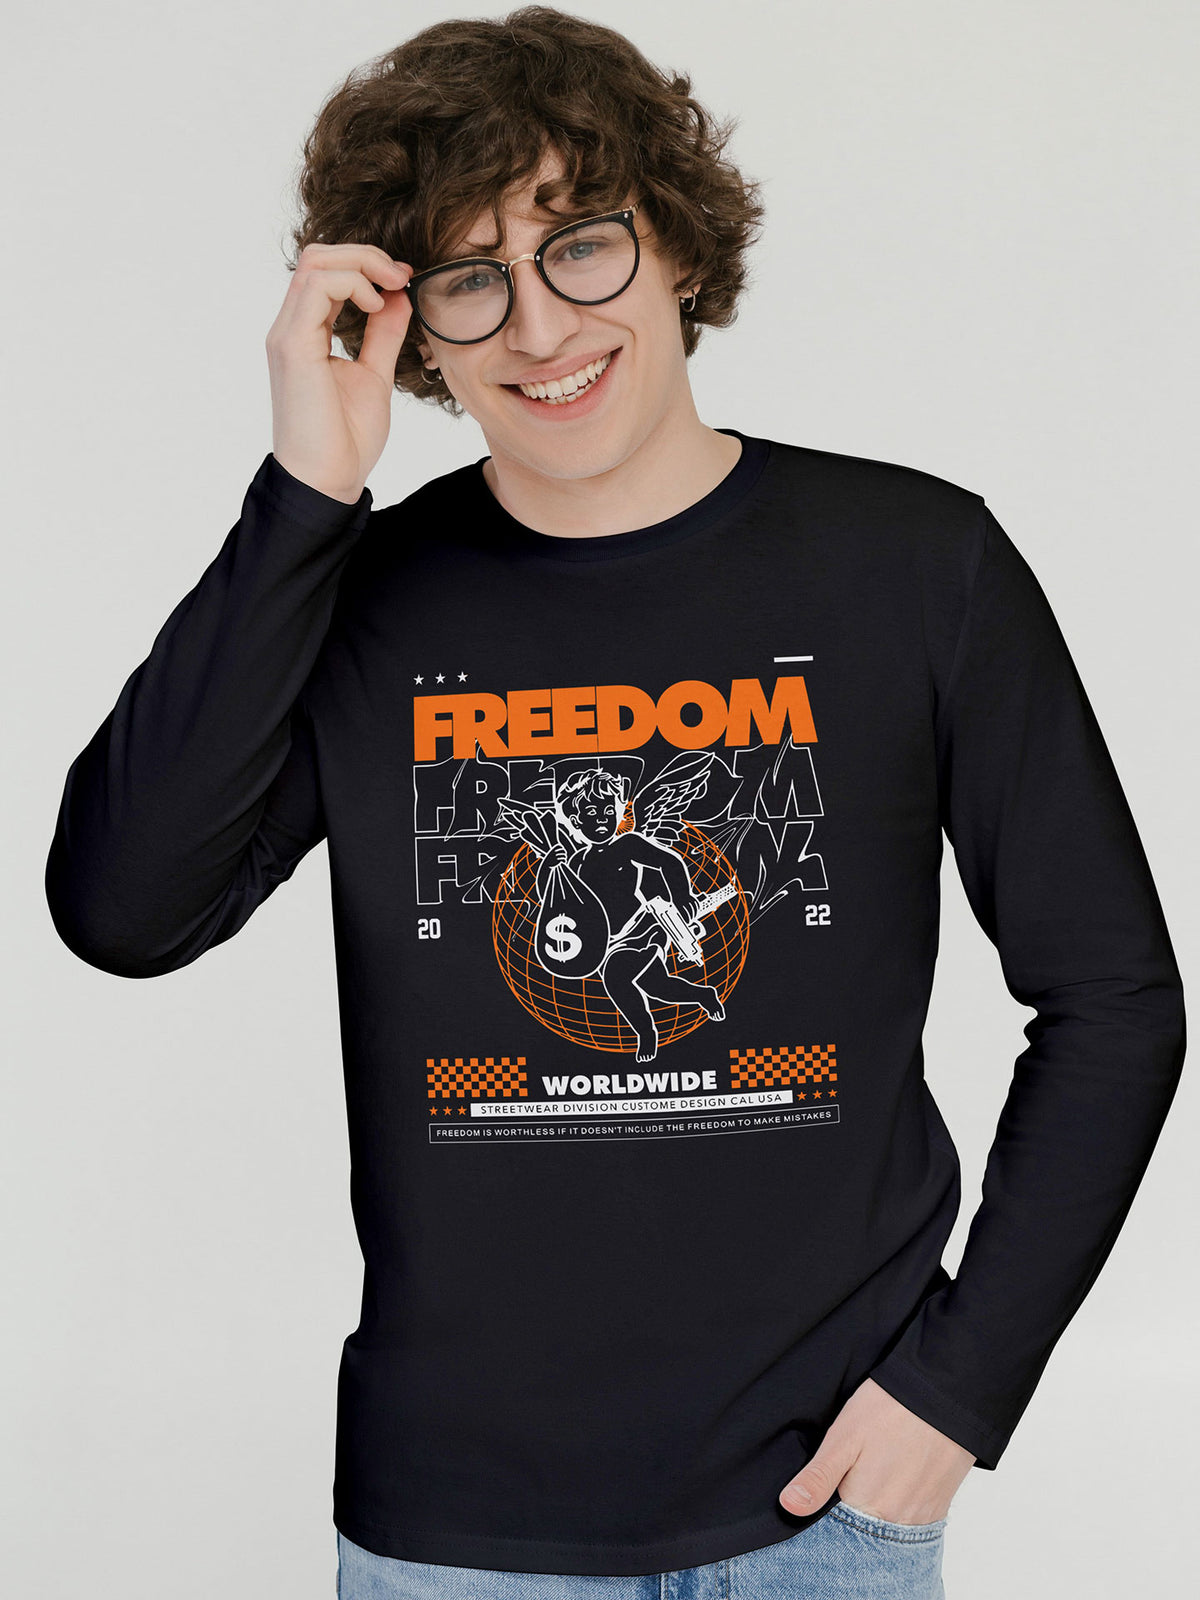 Men's Black Freedom Printed Full-Sleeve T-shirt